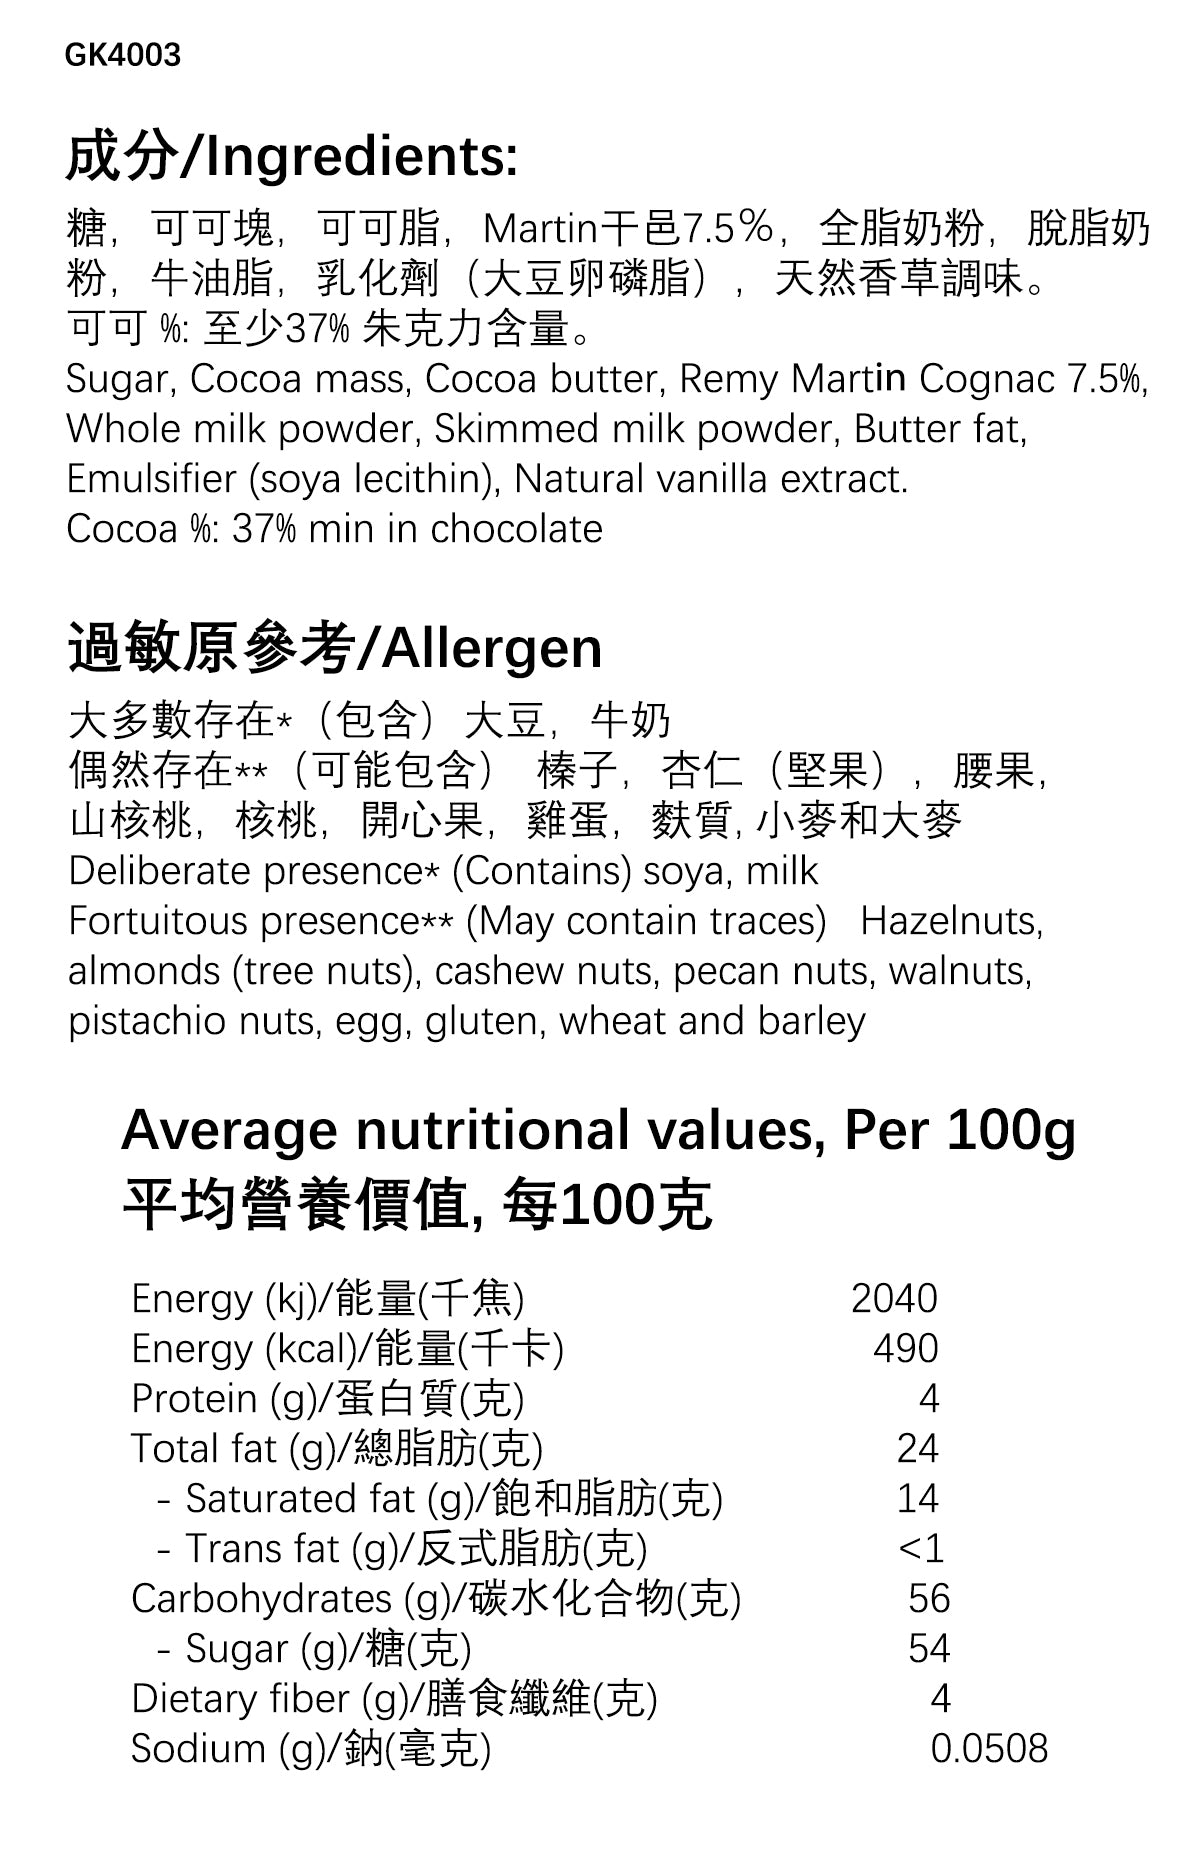 GK4003 Ingredients & Values | Switzerluxe